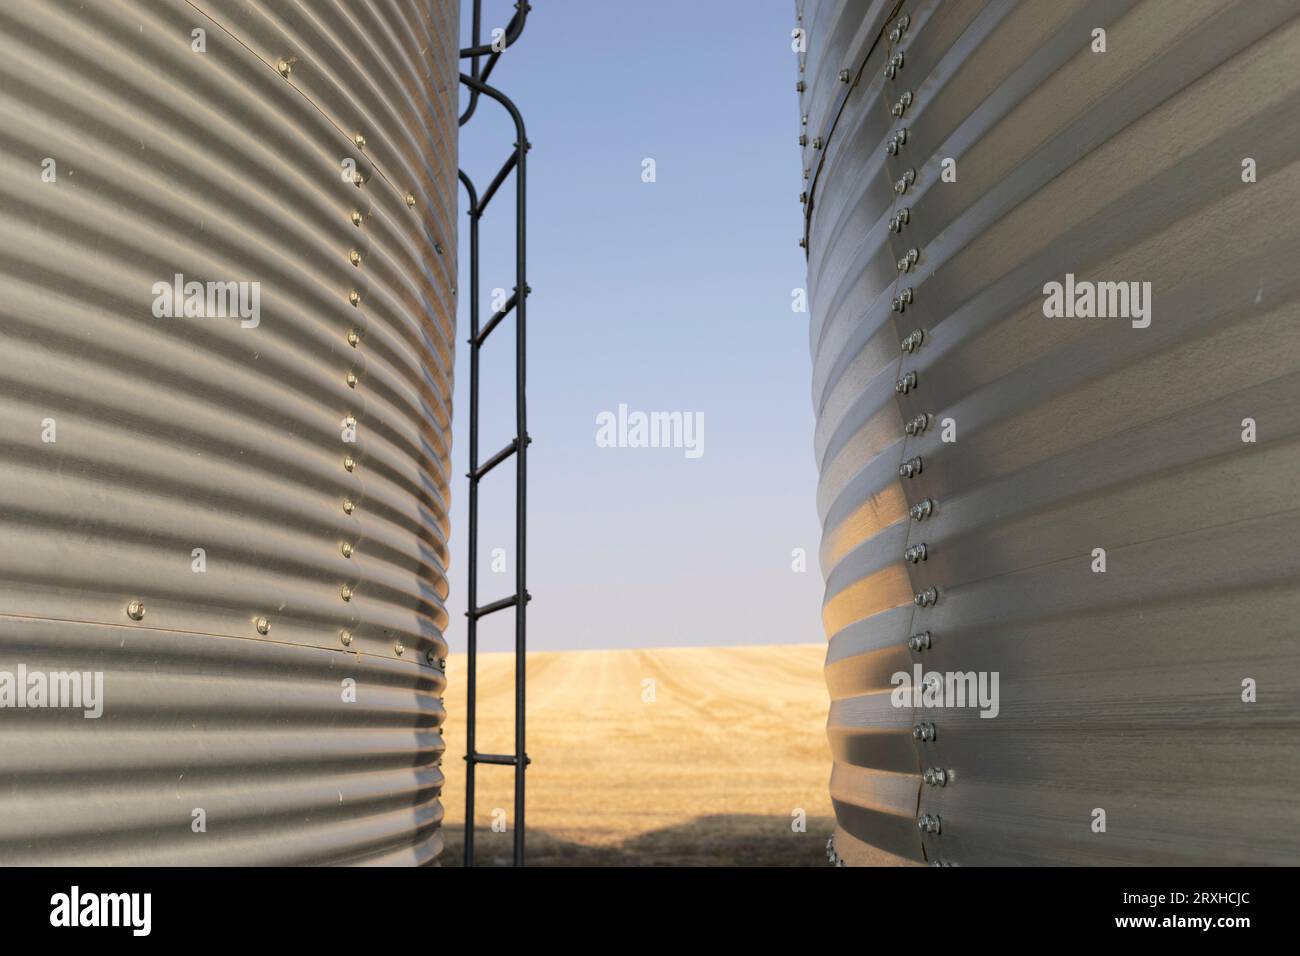 Gros plan du revêtement métallique de deux bacs à céréales et d'une échelle avec vue sur les terres agricoles dorées ; Alberta, Canada Banque D'Images